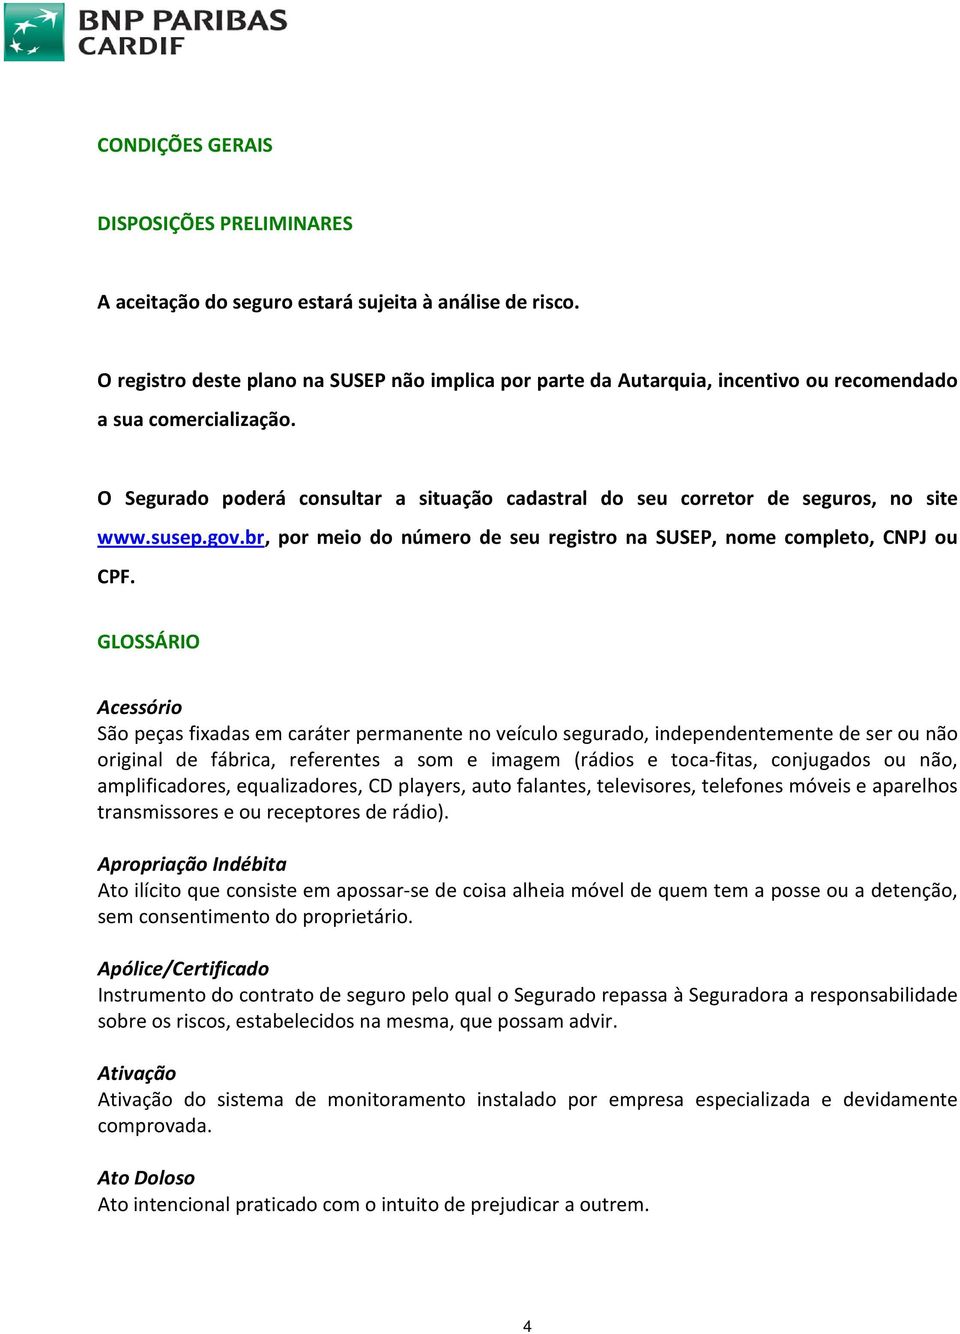 O Segurado poderá consultar a situação cadastral do seu corretor de seguros, no site www.susep.gov.br, por meio do número de seu registro na SUSEP, nome completo, CNPJ ou CPF.